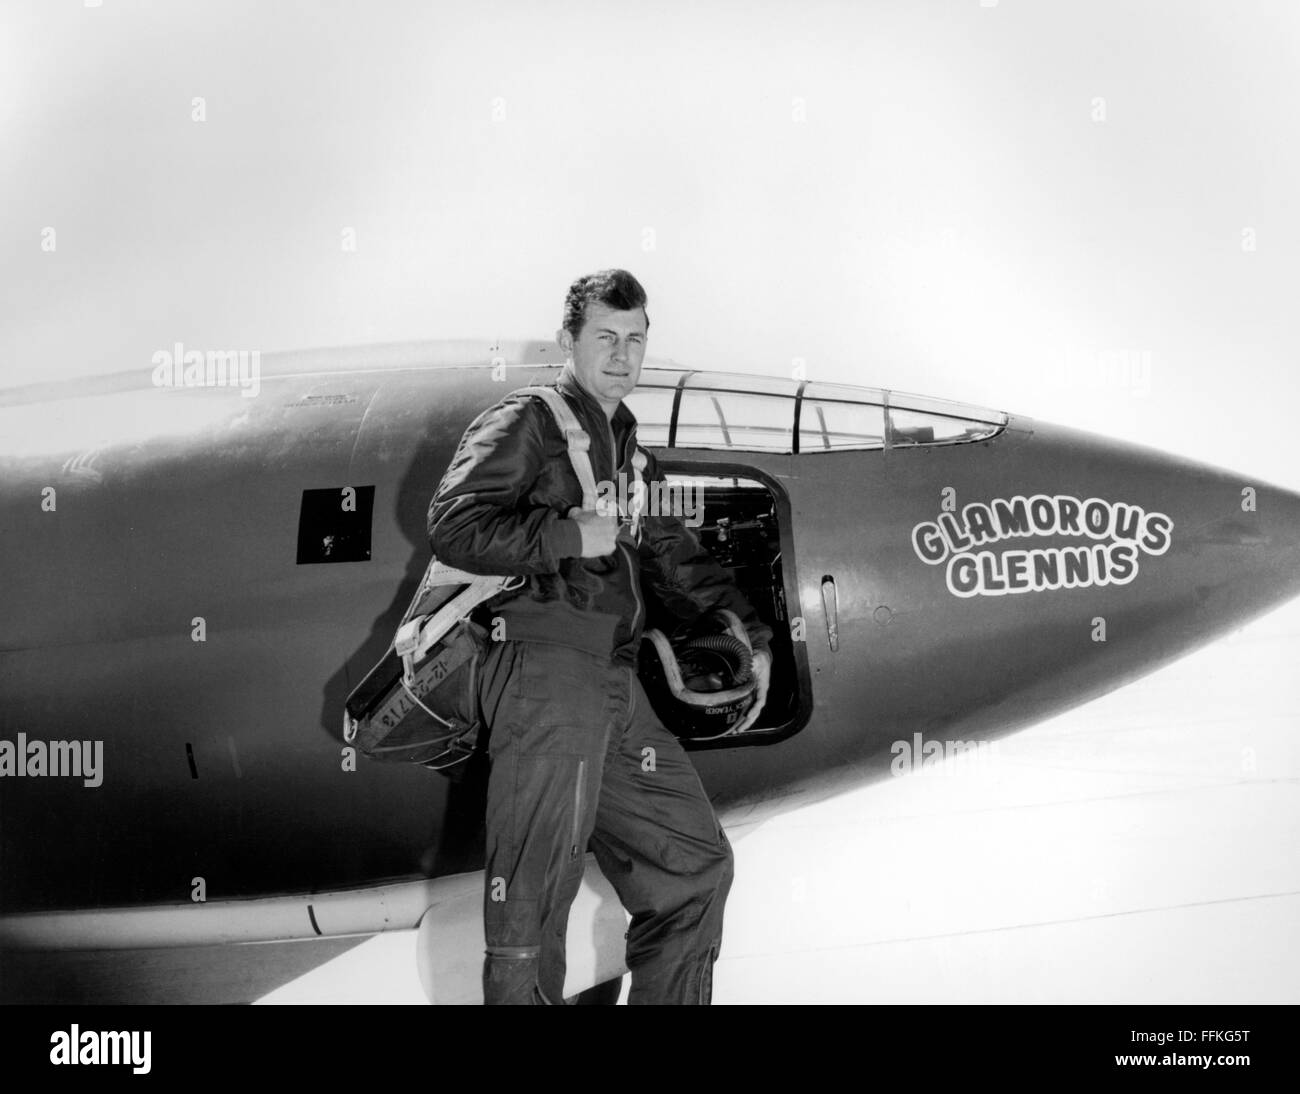 Chuck Yeager. US Air Force pilota Chuck Yeager in piedi nella parte anteriore del Bell X-1 'Glamorous Glennis' in cui egli ha rotto la barriera del suono. Foto c.1947 dalla USAF Foto Stock